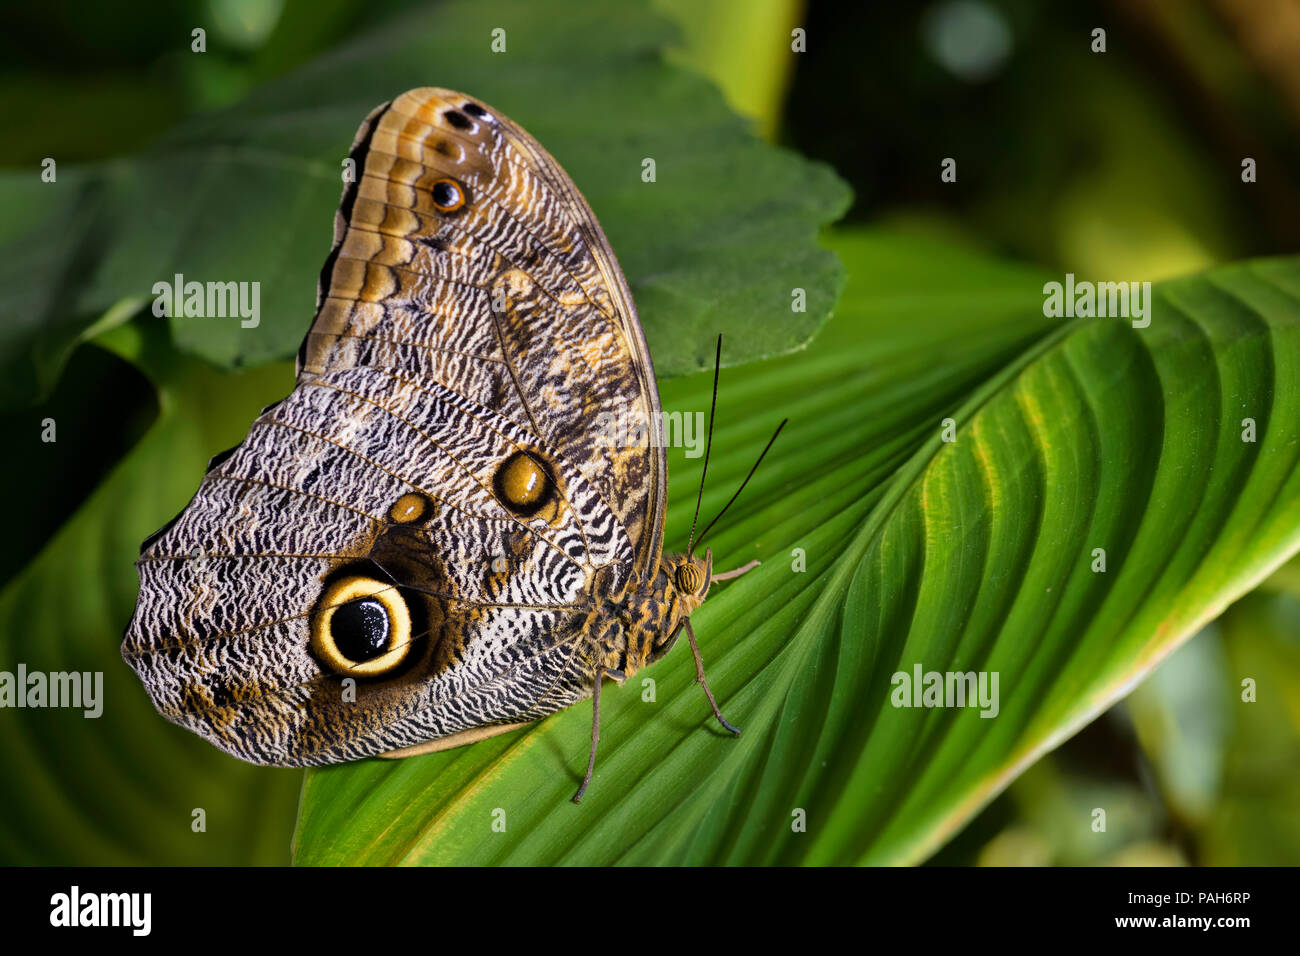 Hibou géant - papillon Caligo memnon, grand beau papillon d'Amérique centrale les forêts. Banque D'Images